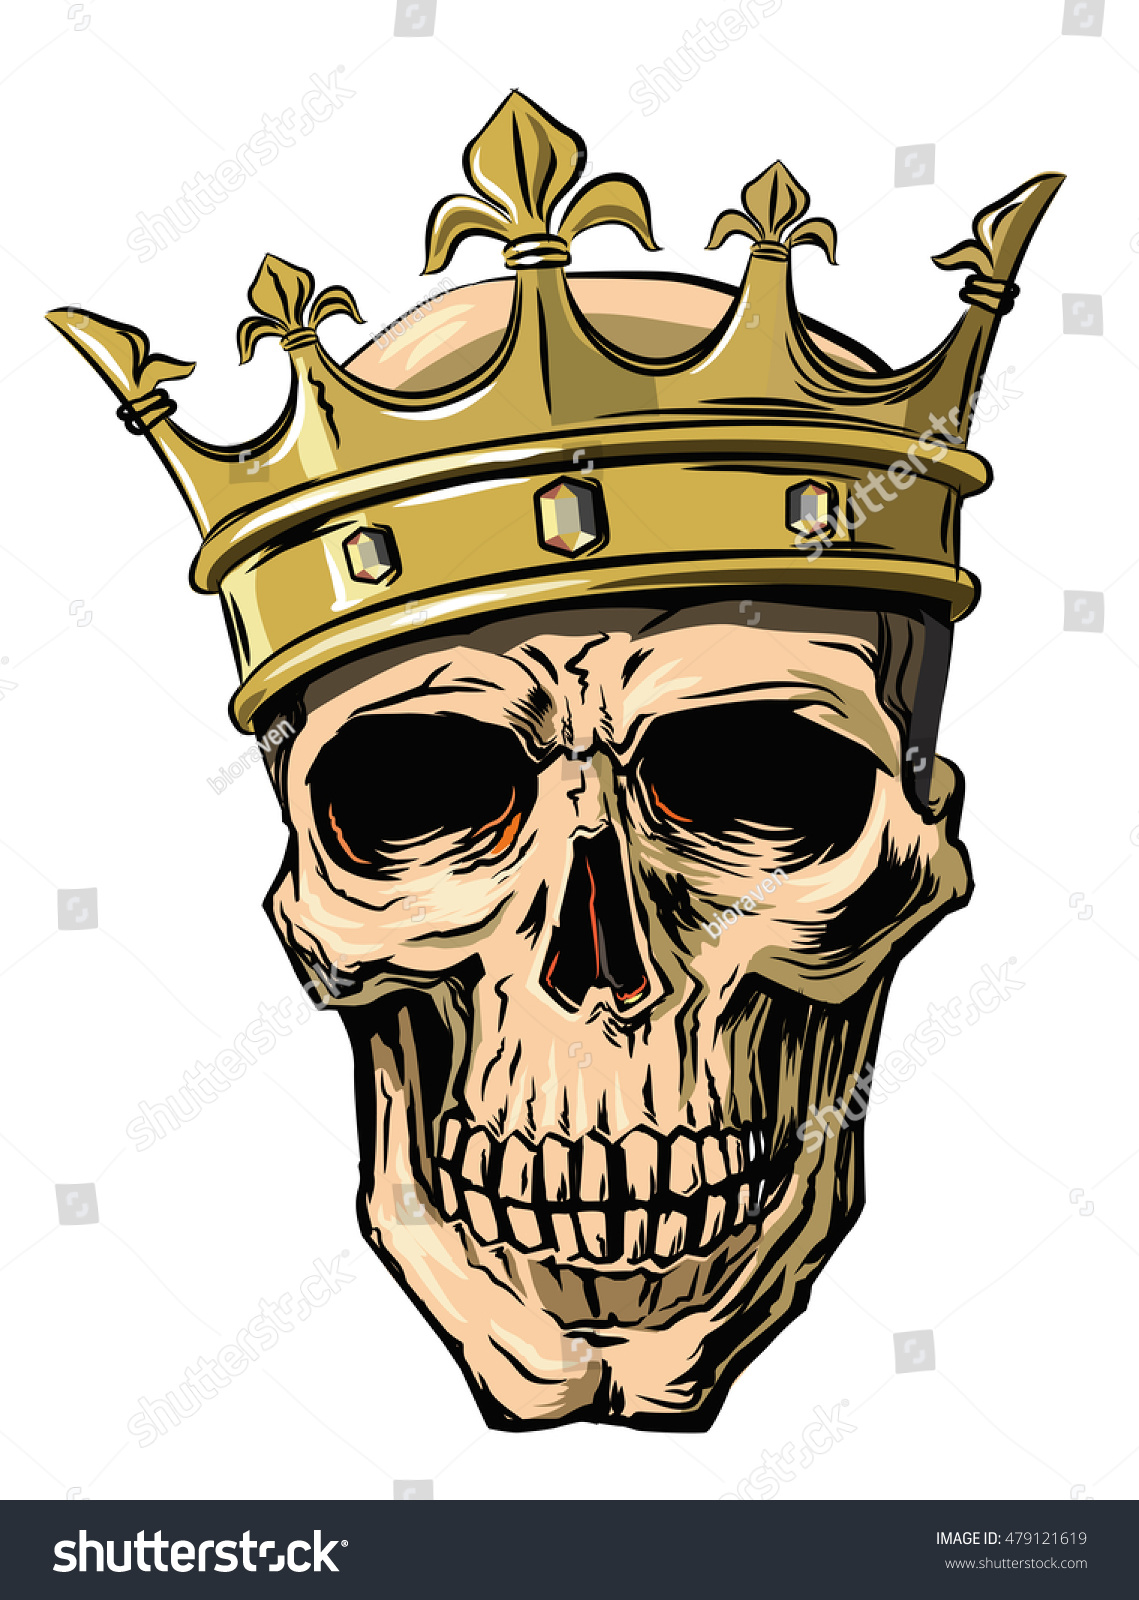 Vector Skull Crown On White Background Stock Vector ...